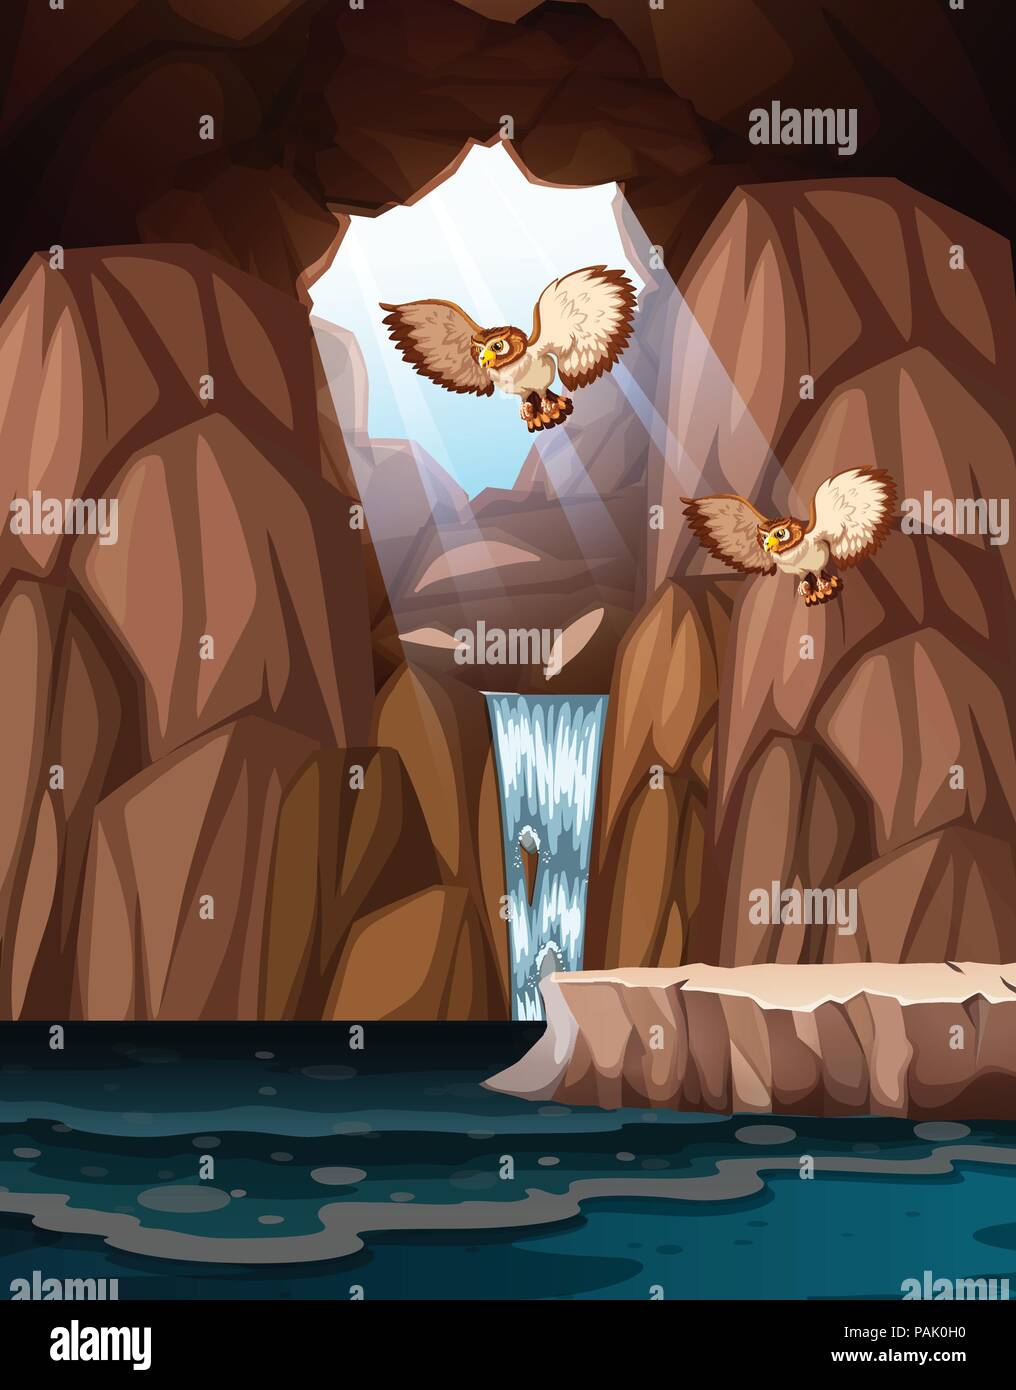 Höhle mit Wasserfällen und Eulen Abbildung Stock Vektor